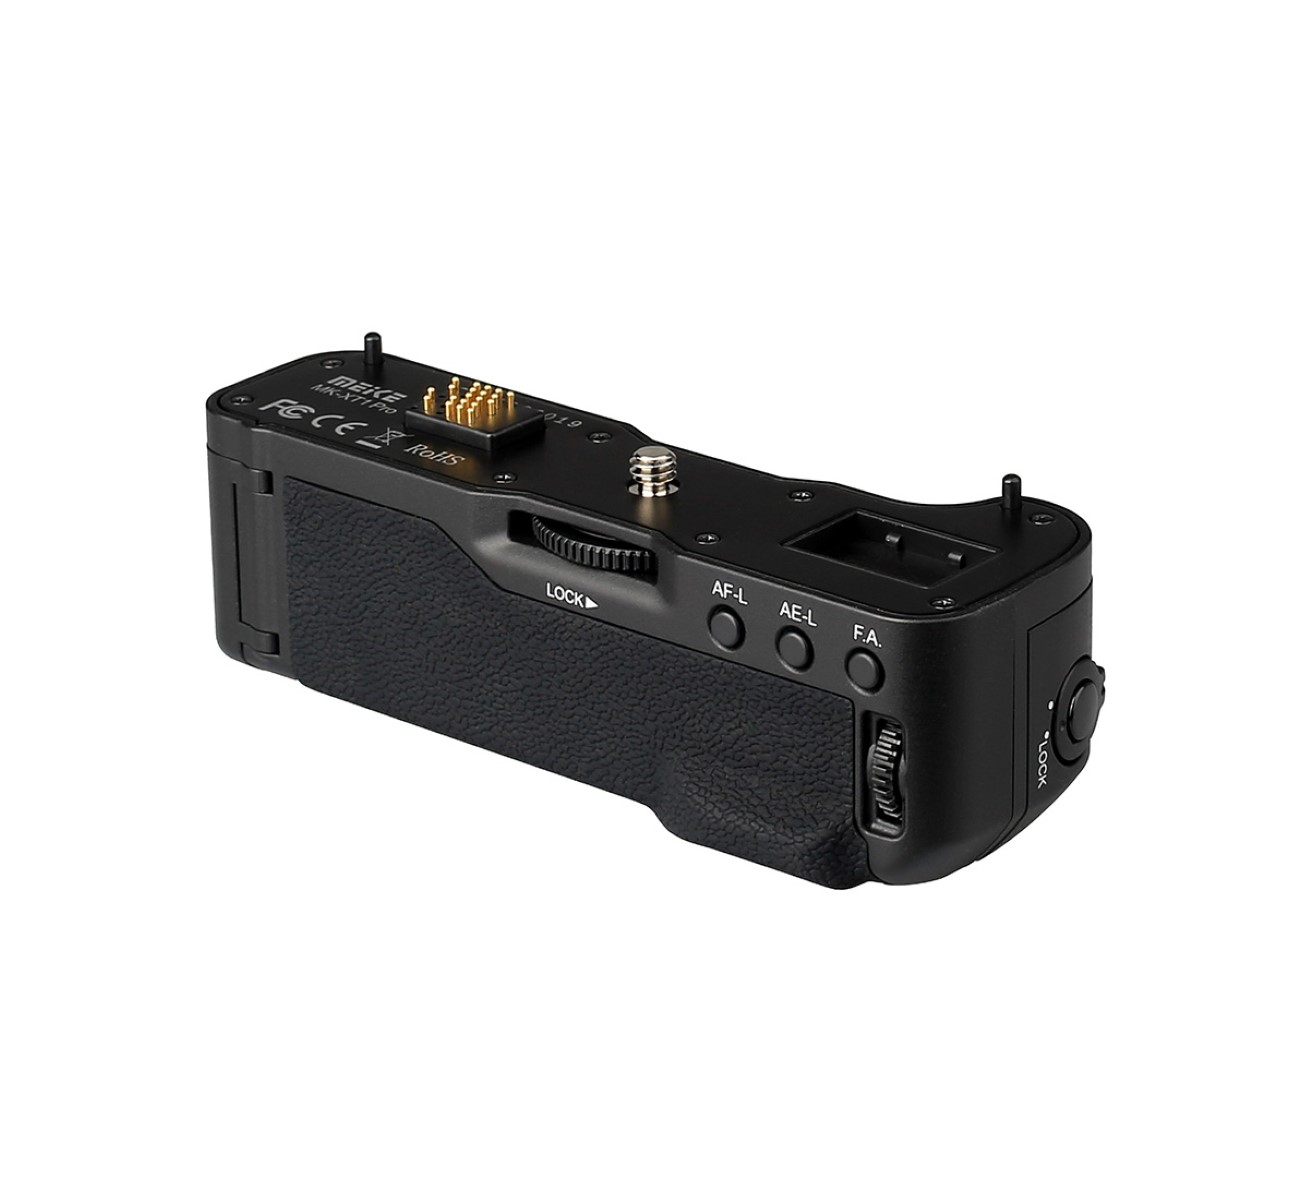 Meike Batteriegriff MK-XT1 Pro mit Funk-Timer-Fernauslöser für Fujifilm X-T1 wie VG-XT1